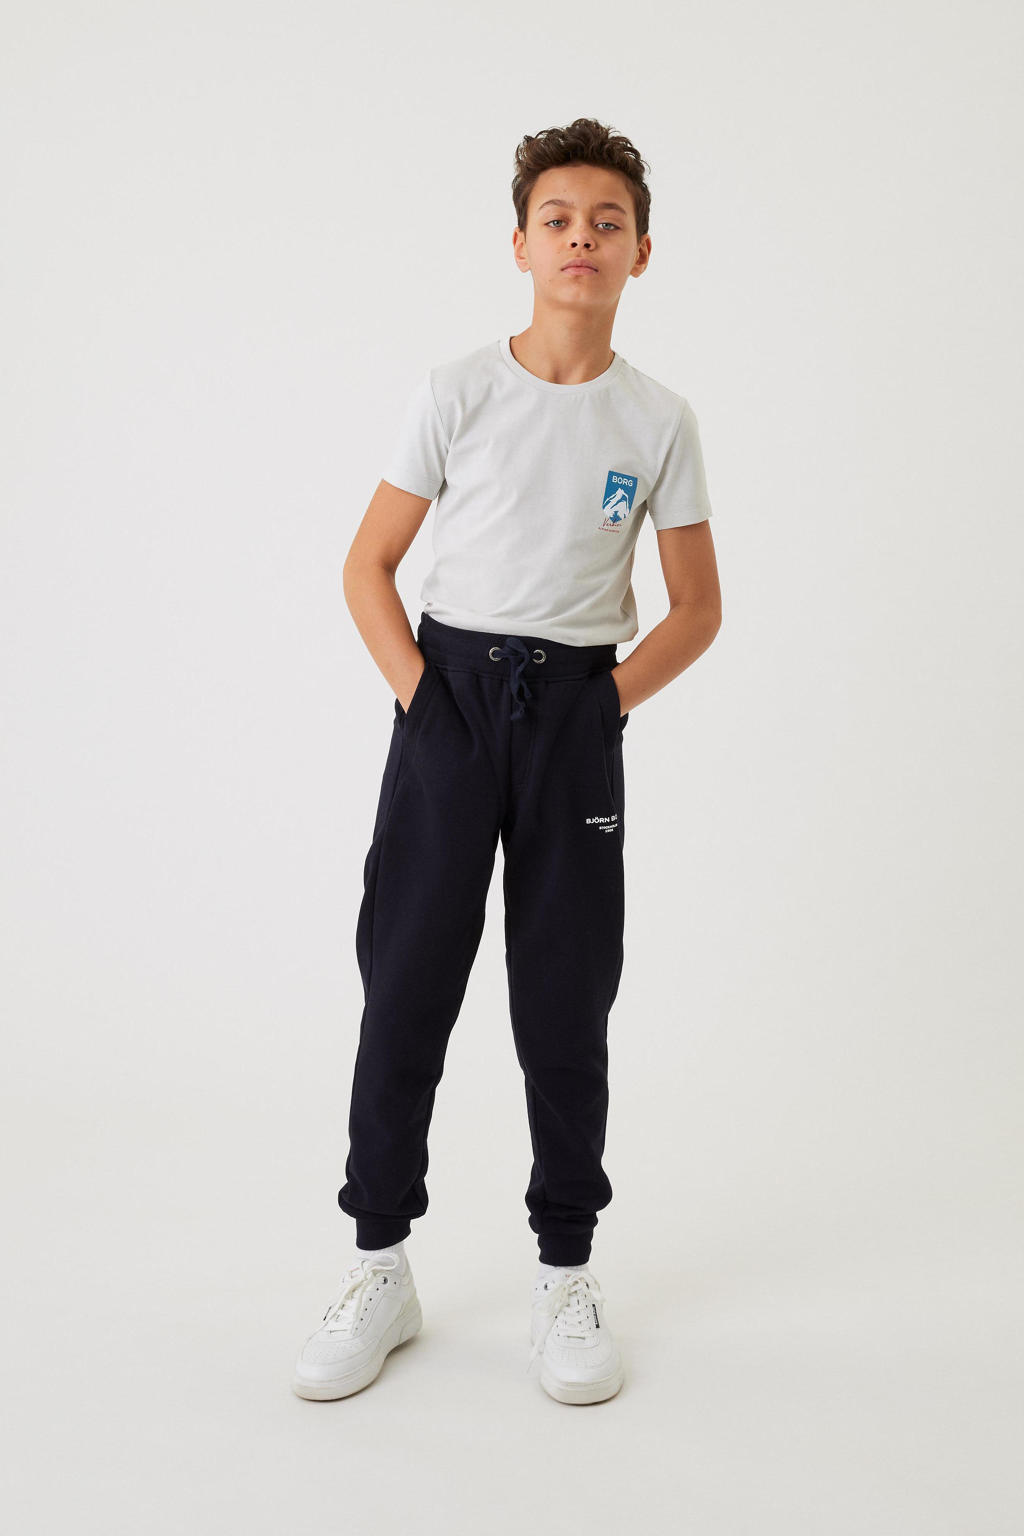 Blauwe jongens Björn Borg tapered fit joggingbroek van sweat materiaal met regular waist, elastische tailleband met koord en logo dessin